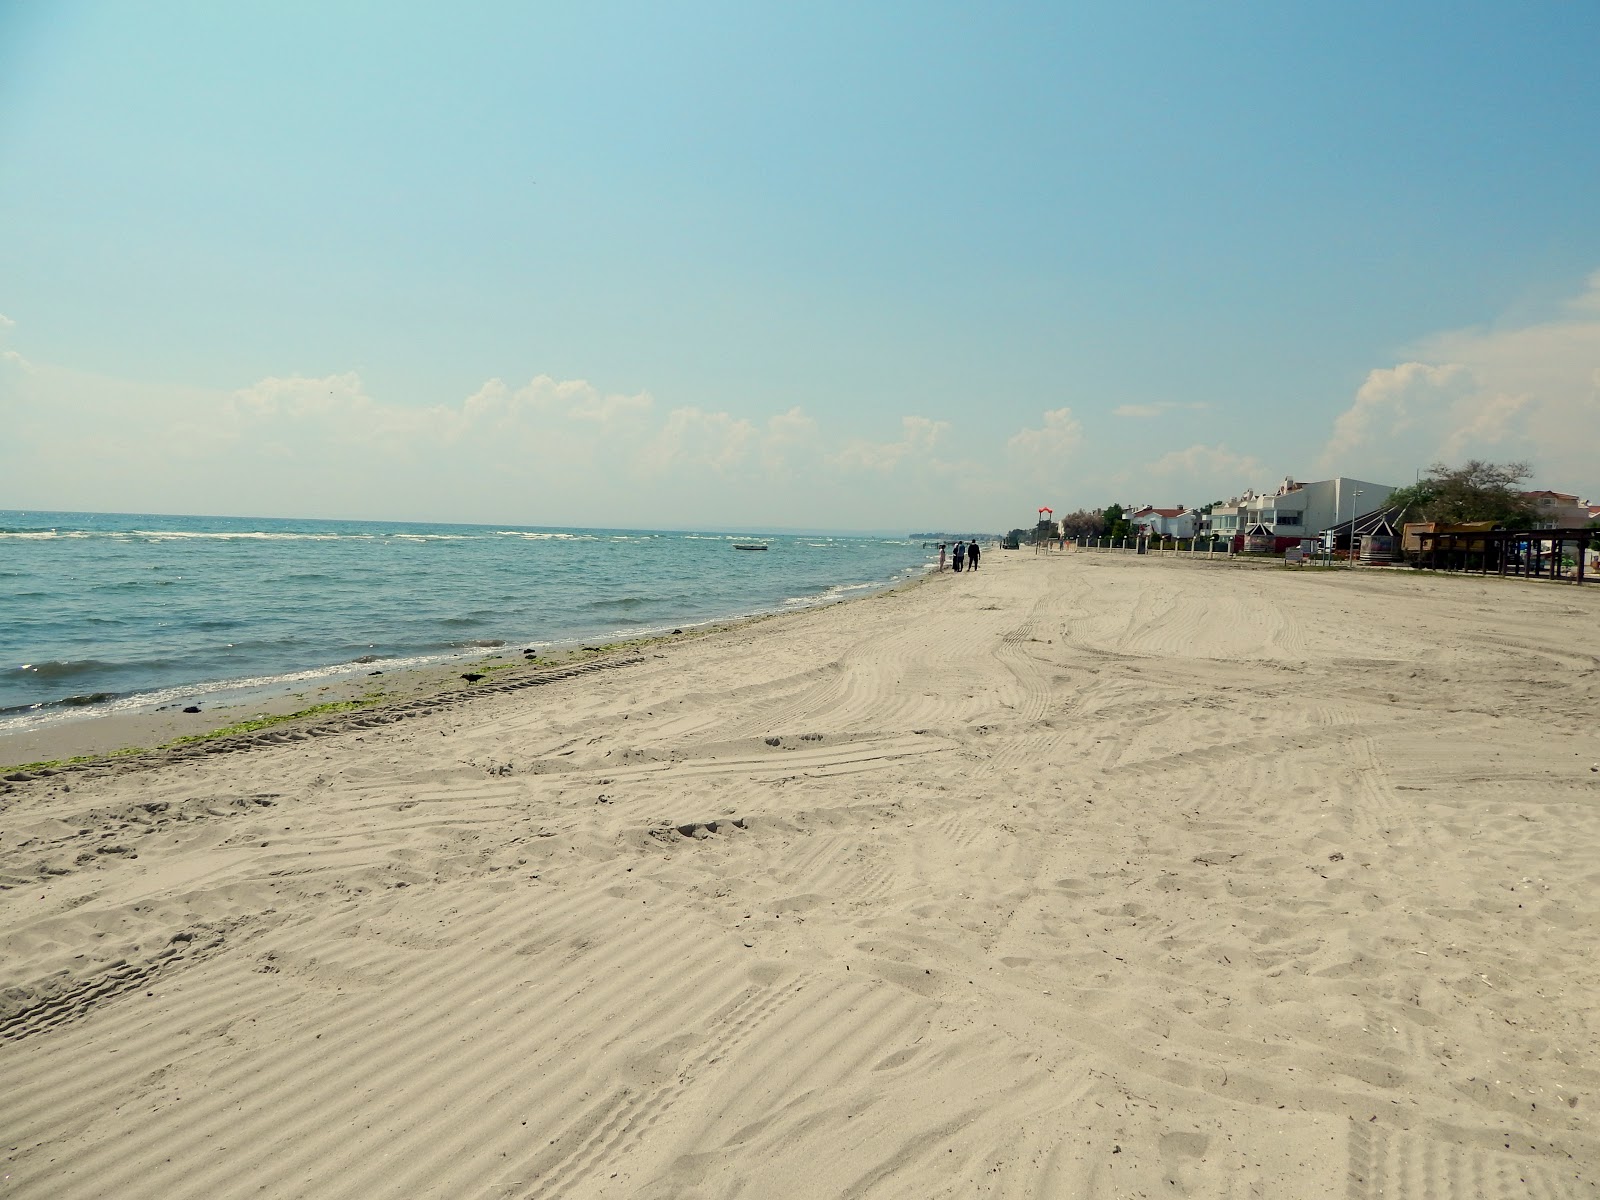 Zdjęcie Ataturk Parki beach obszar kurortu nadmorskiego